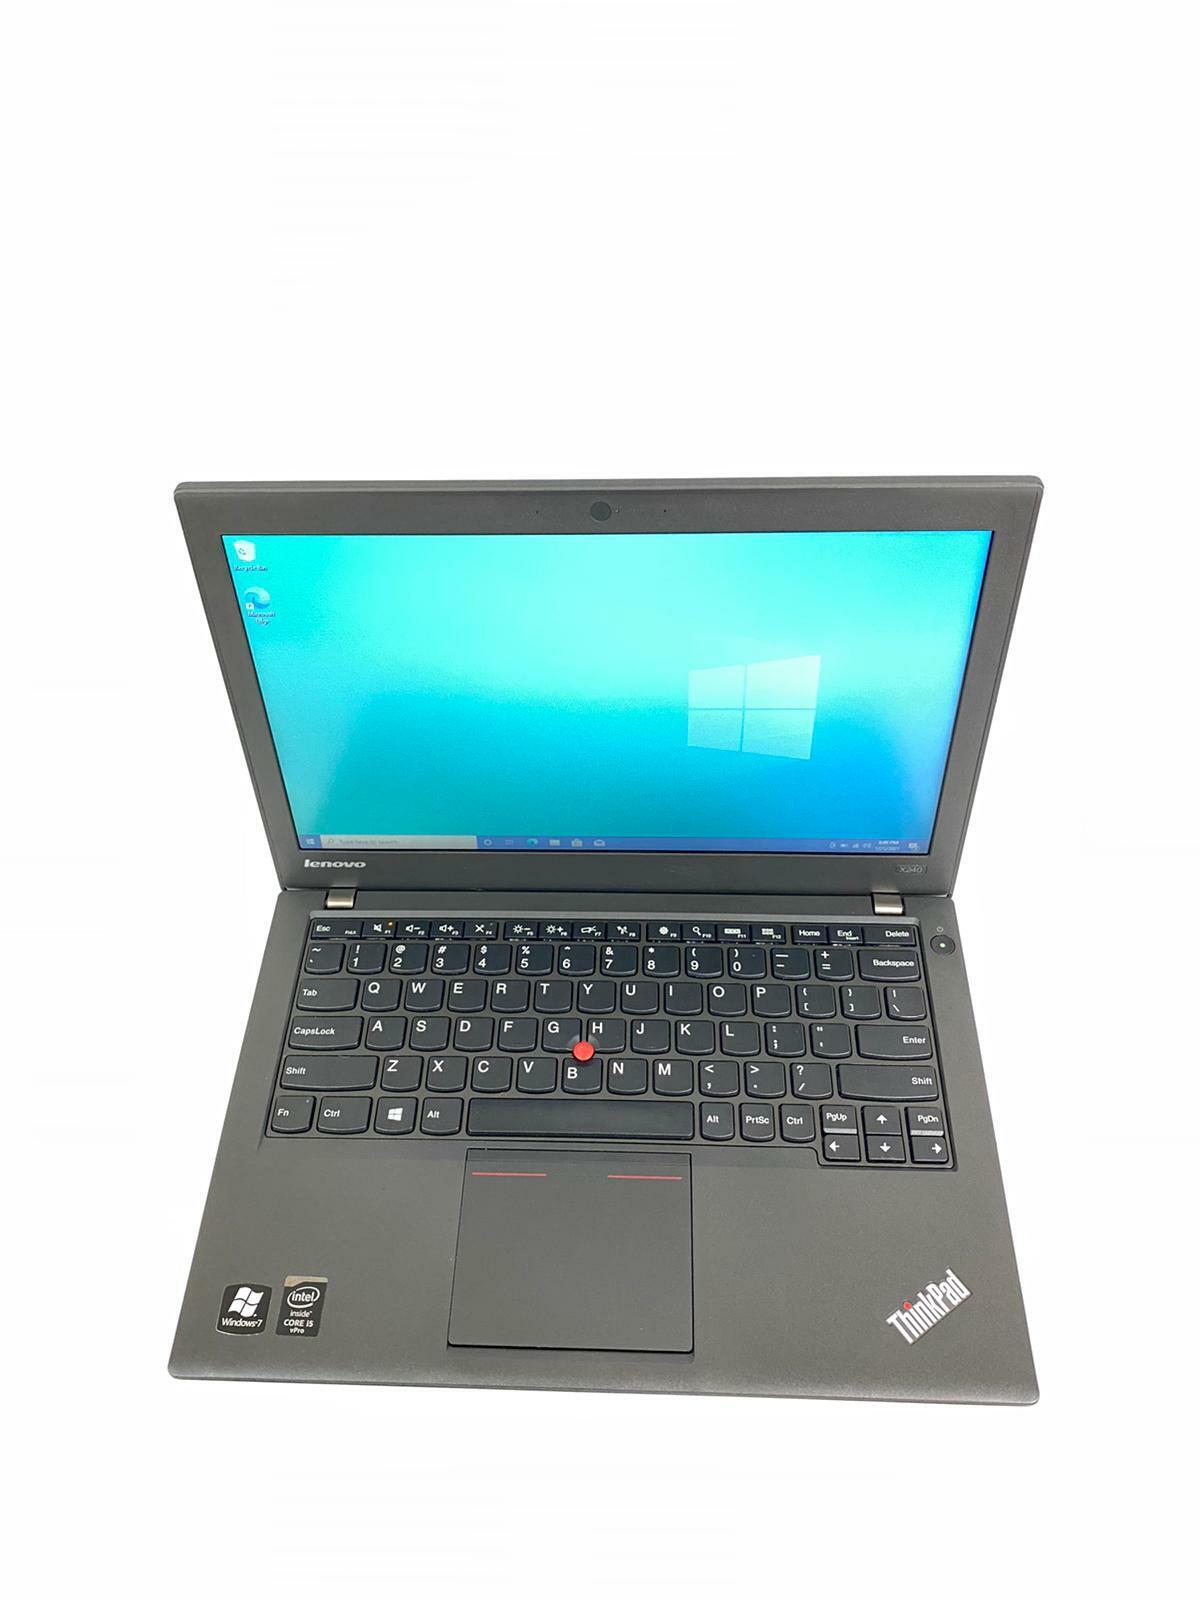 Lenovo ThinkPad X240 - Intel Core i5 4300U 1.90GHz 4GB RAM 128GB SSD Win 10 Pro